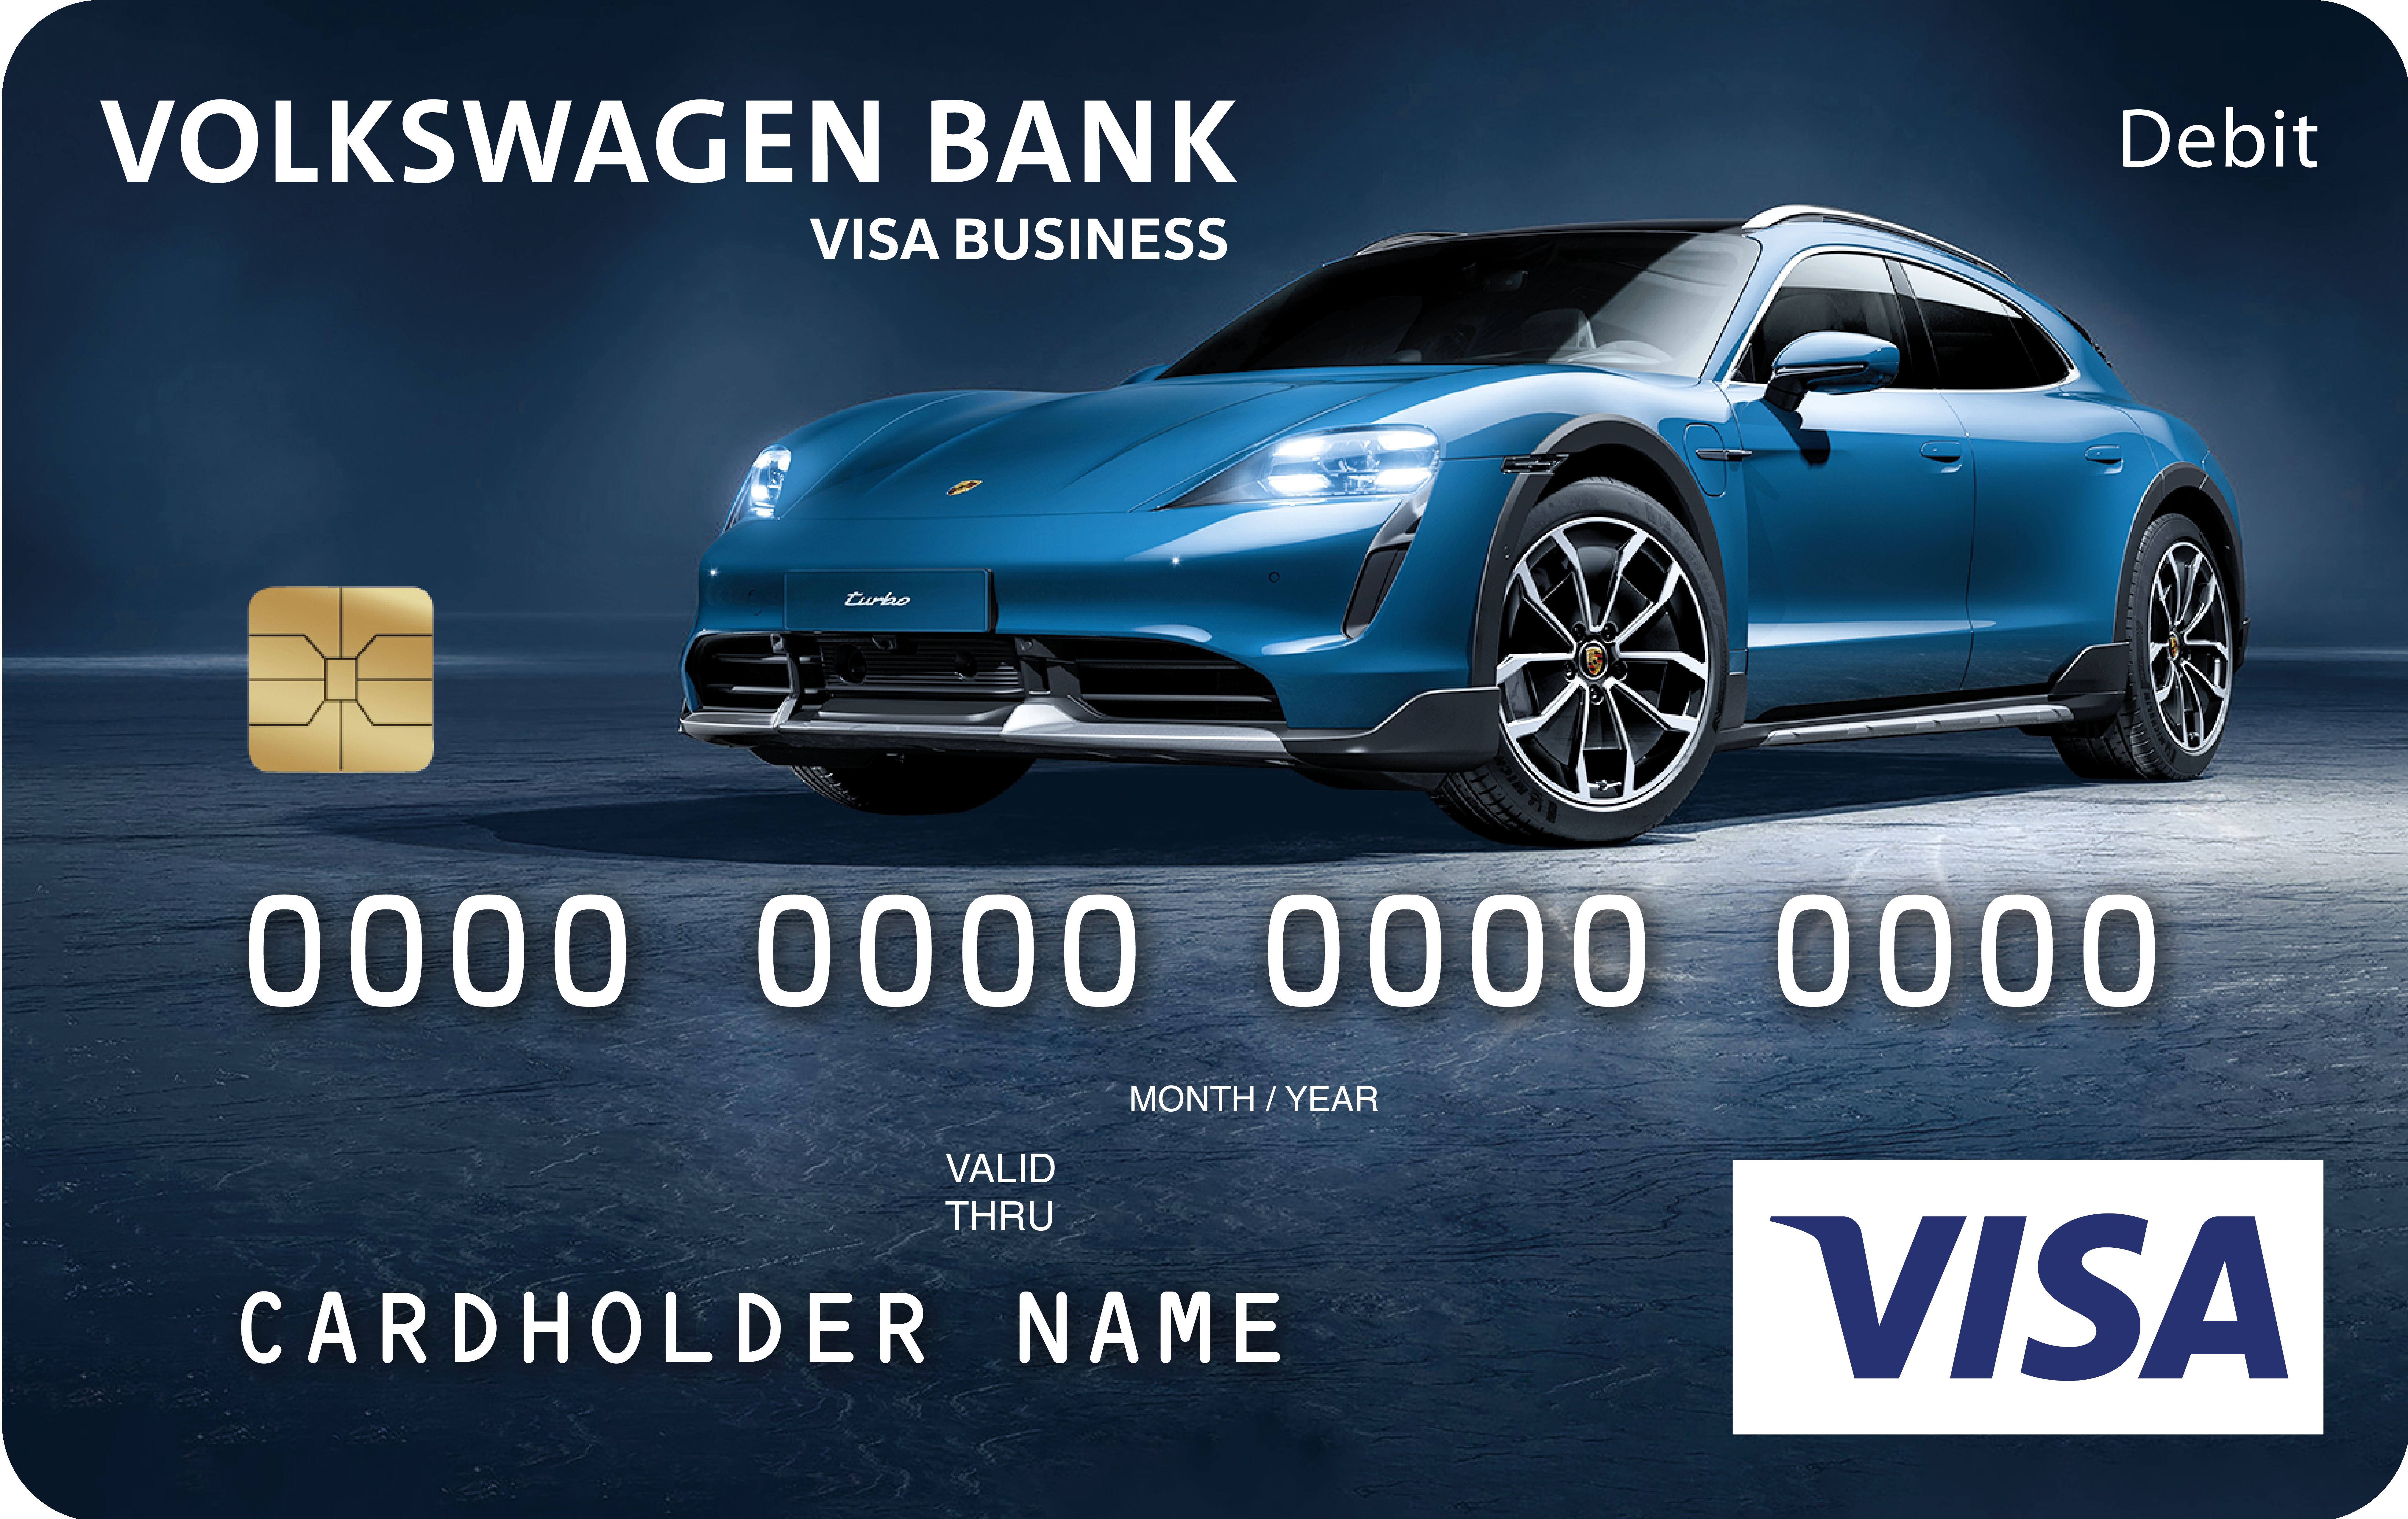 Volkswagen Bank wprowadza kartę z wizerunkiem Porsche Taycan